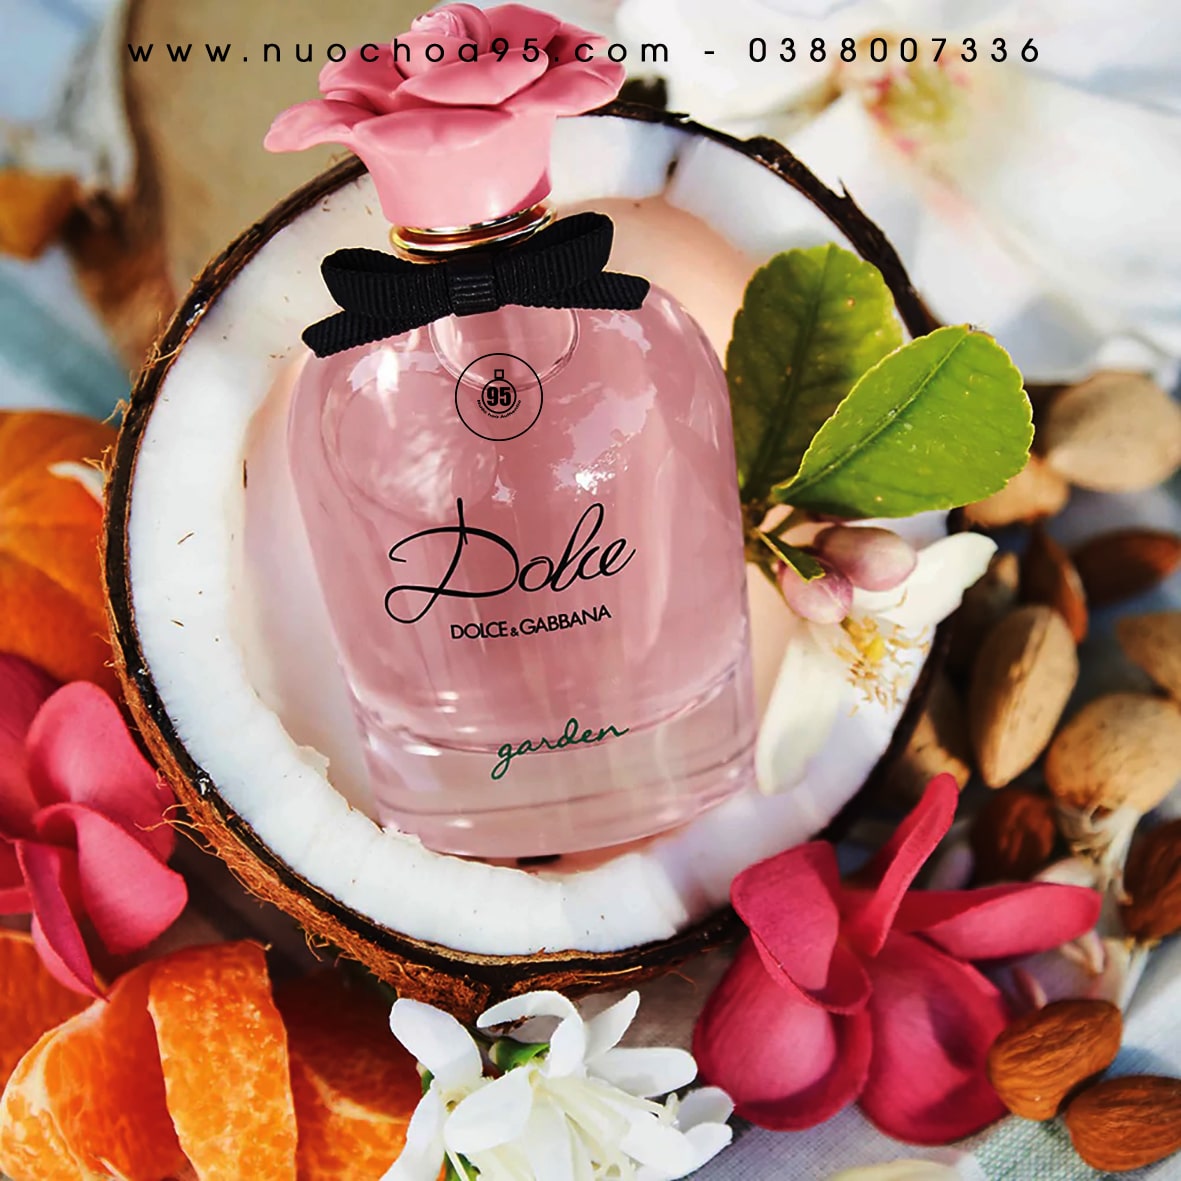 Review nước hoa Dolce Gabbana mùi nào thơm nhất? - Ảnh 6